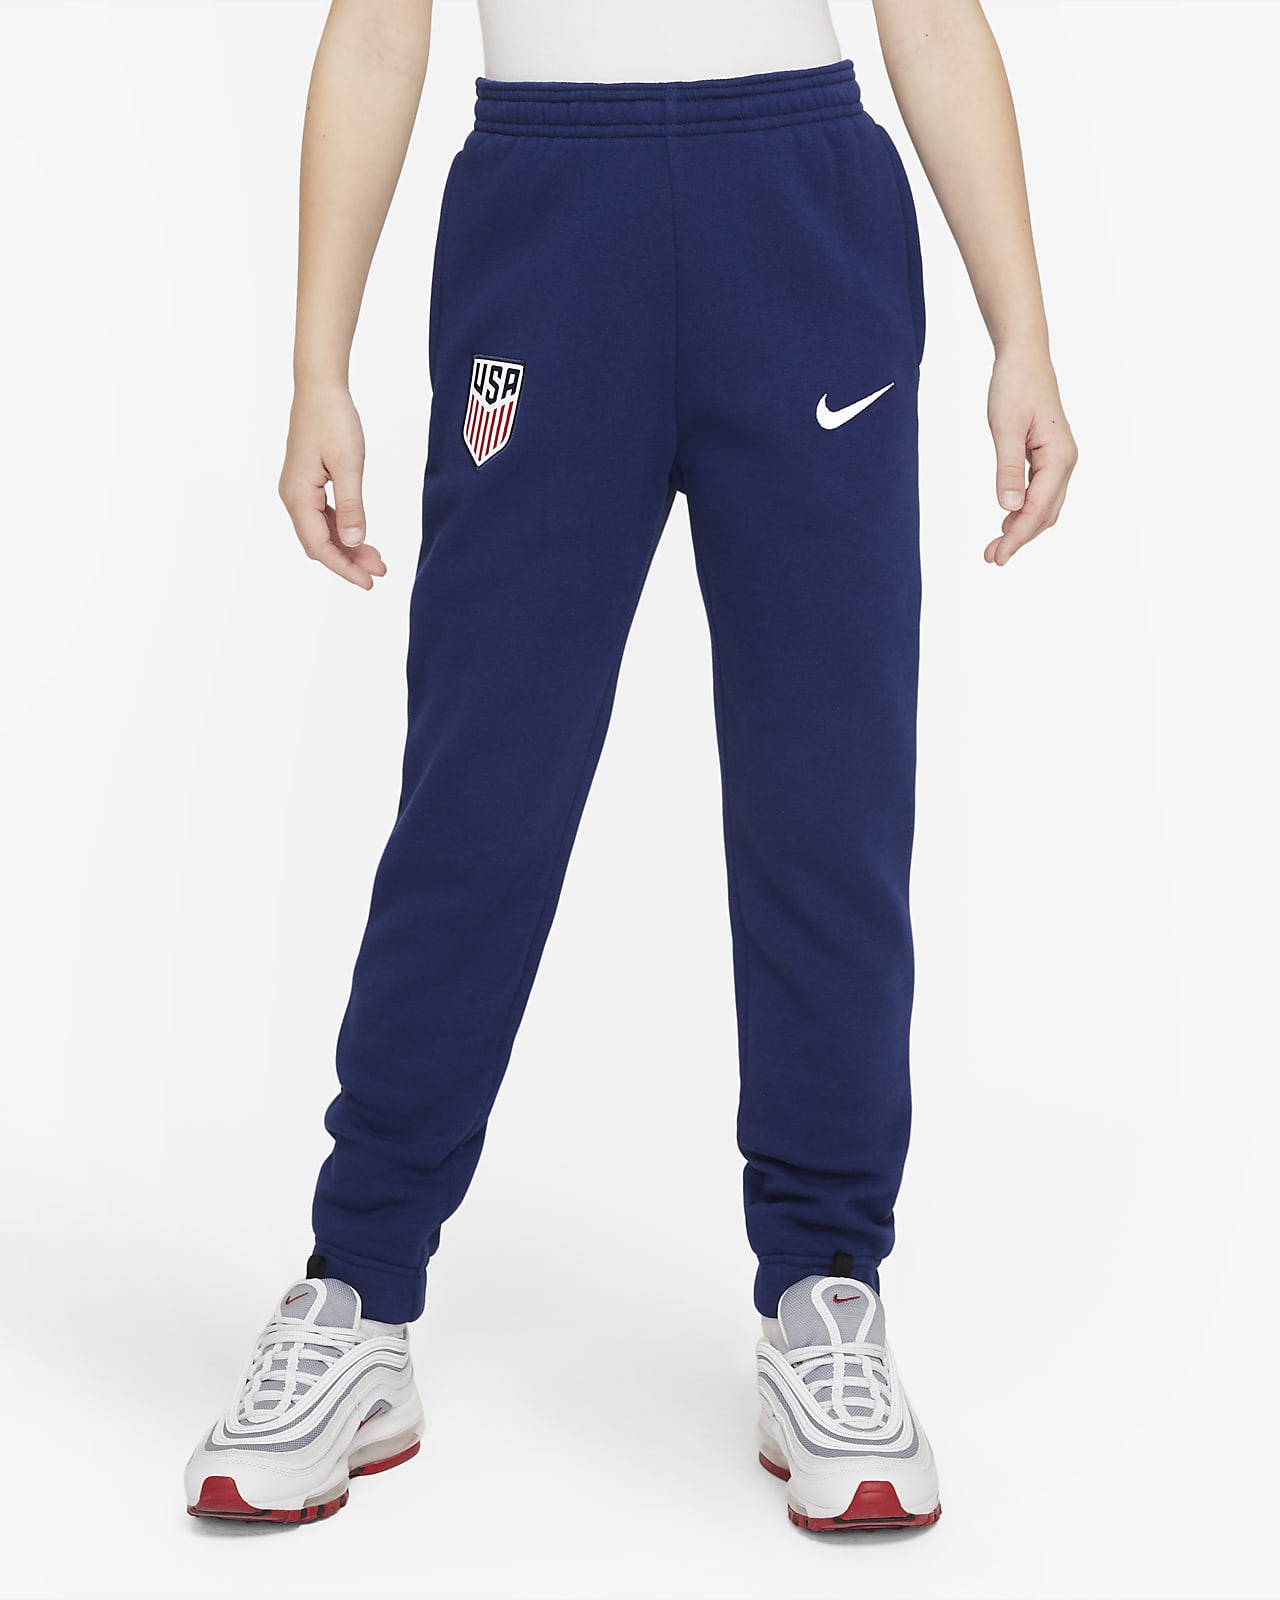 Pants de fútbol tejido Fleece Nike para niños talla grande EE. UU..